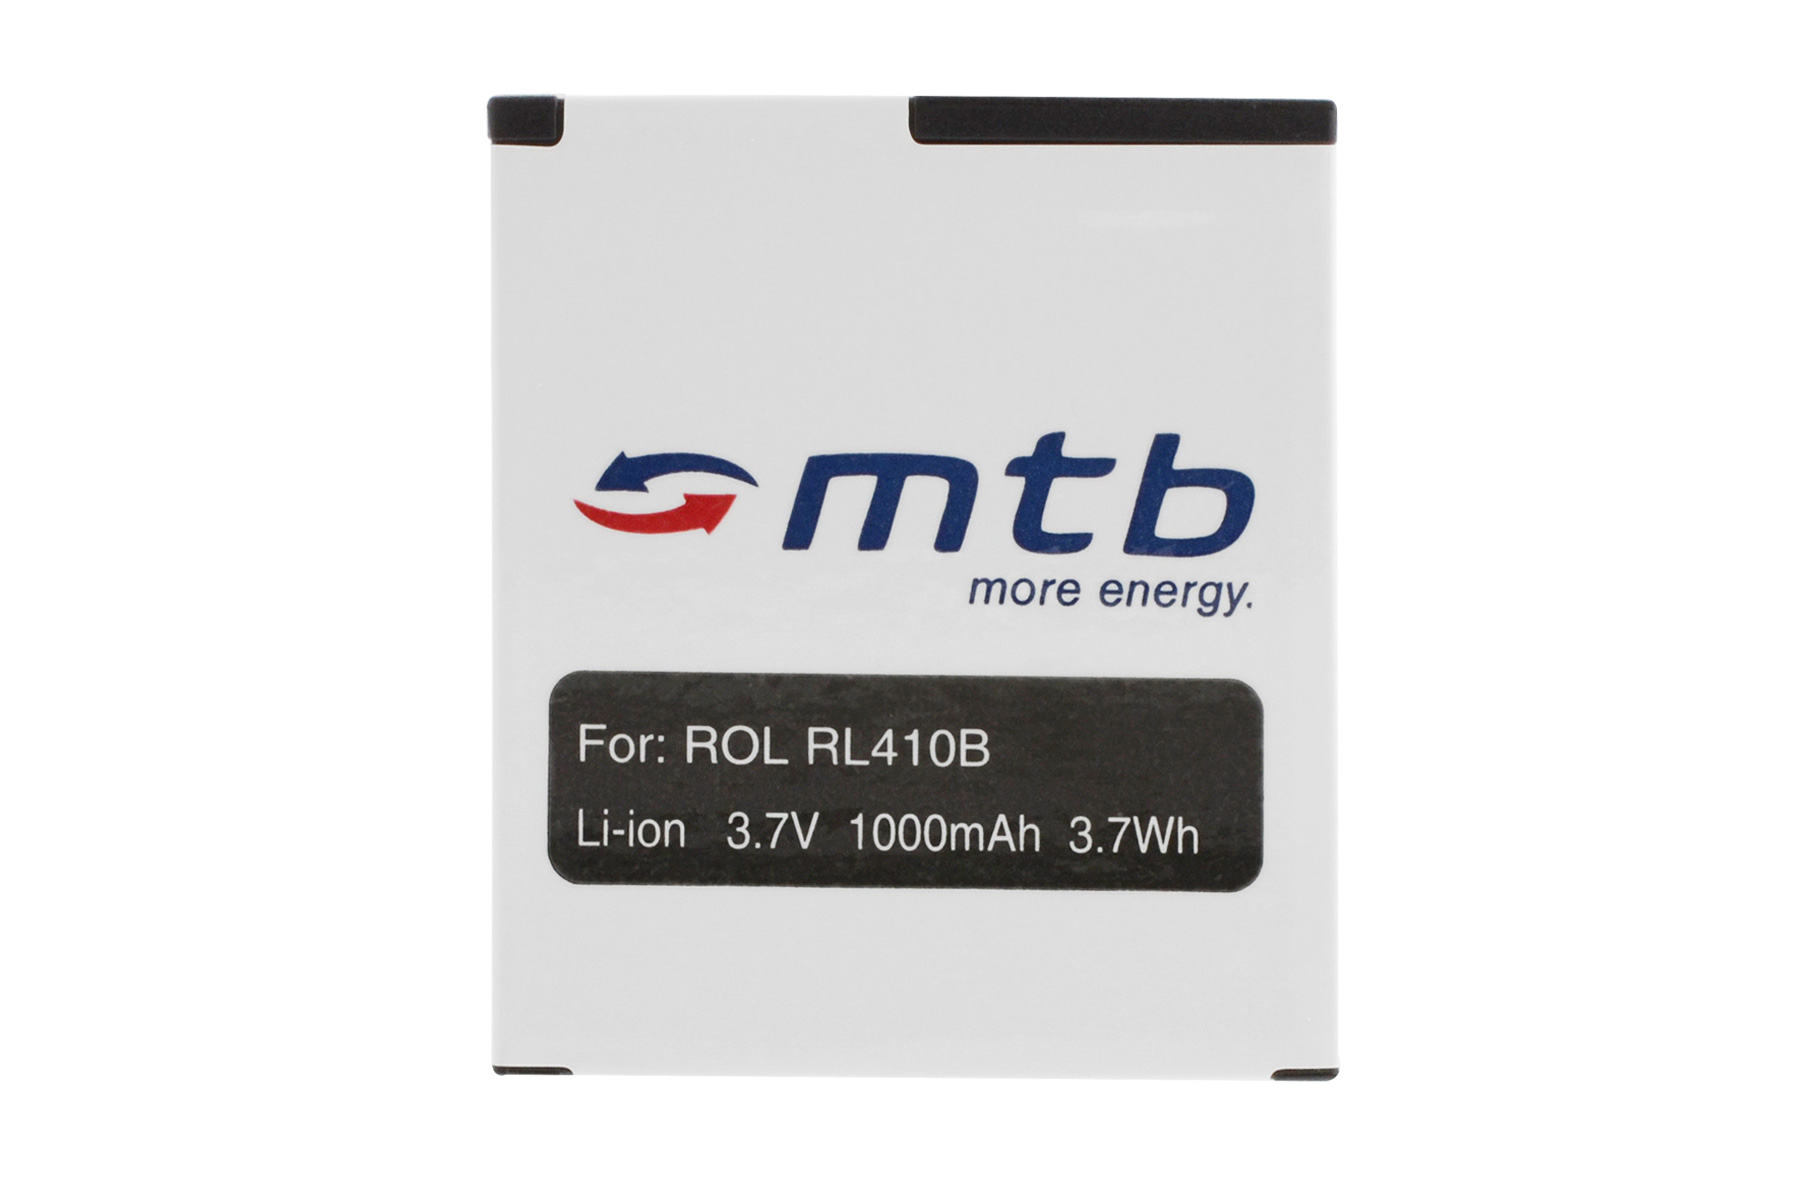 MTB MORE RL410B BAT-452 ENERGY 2x Li-Ion, mAh Akku, 1000